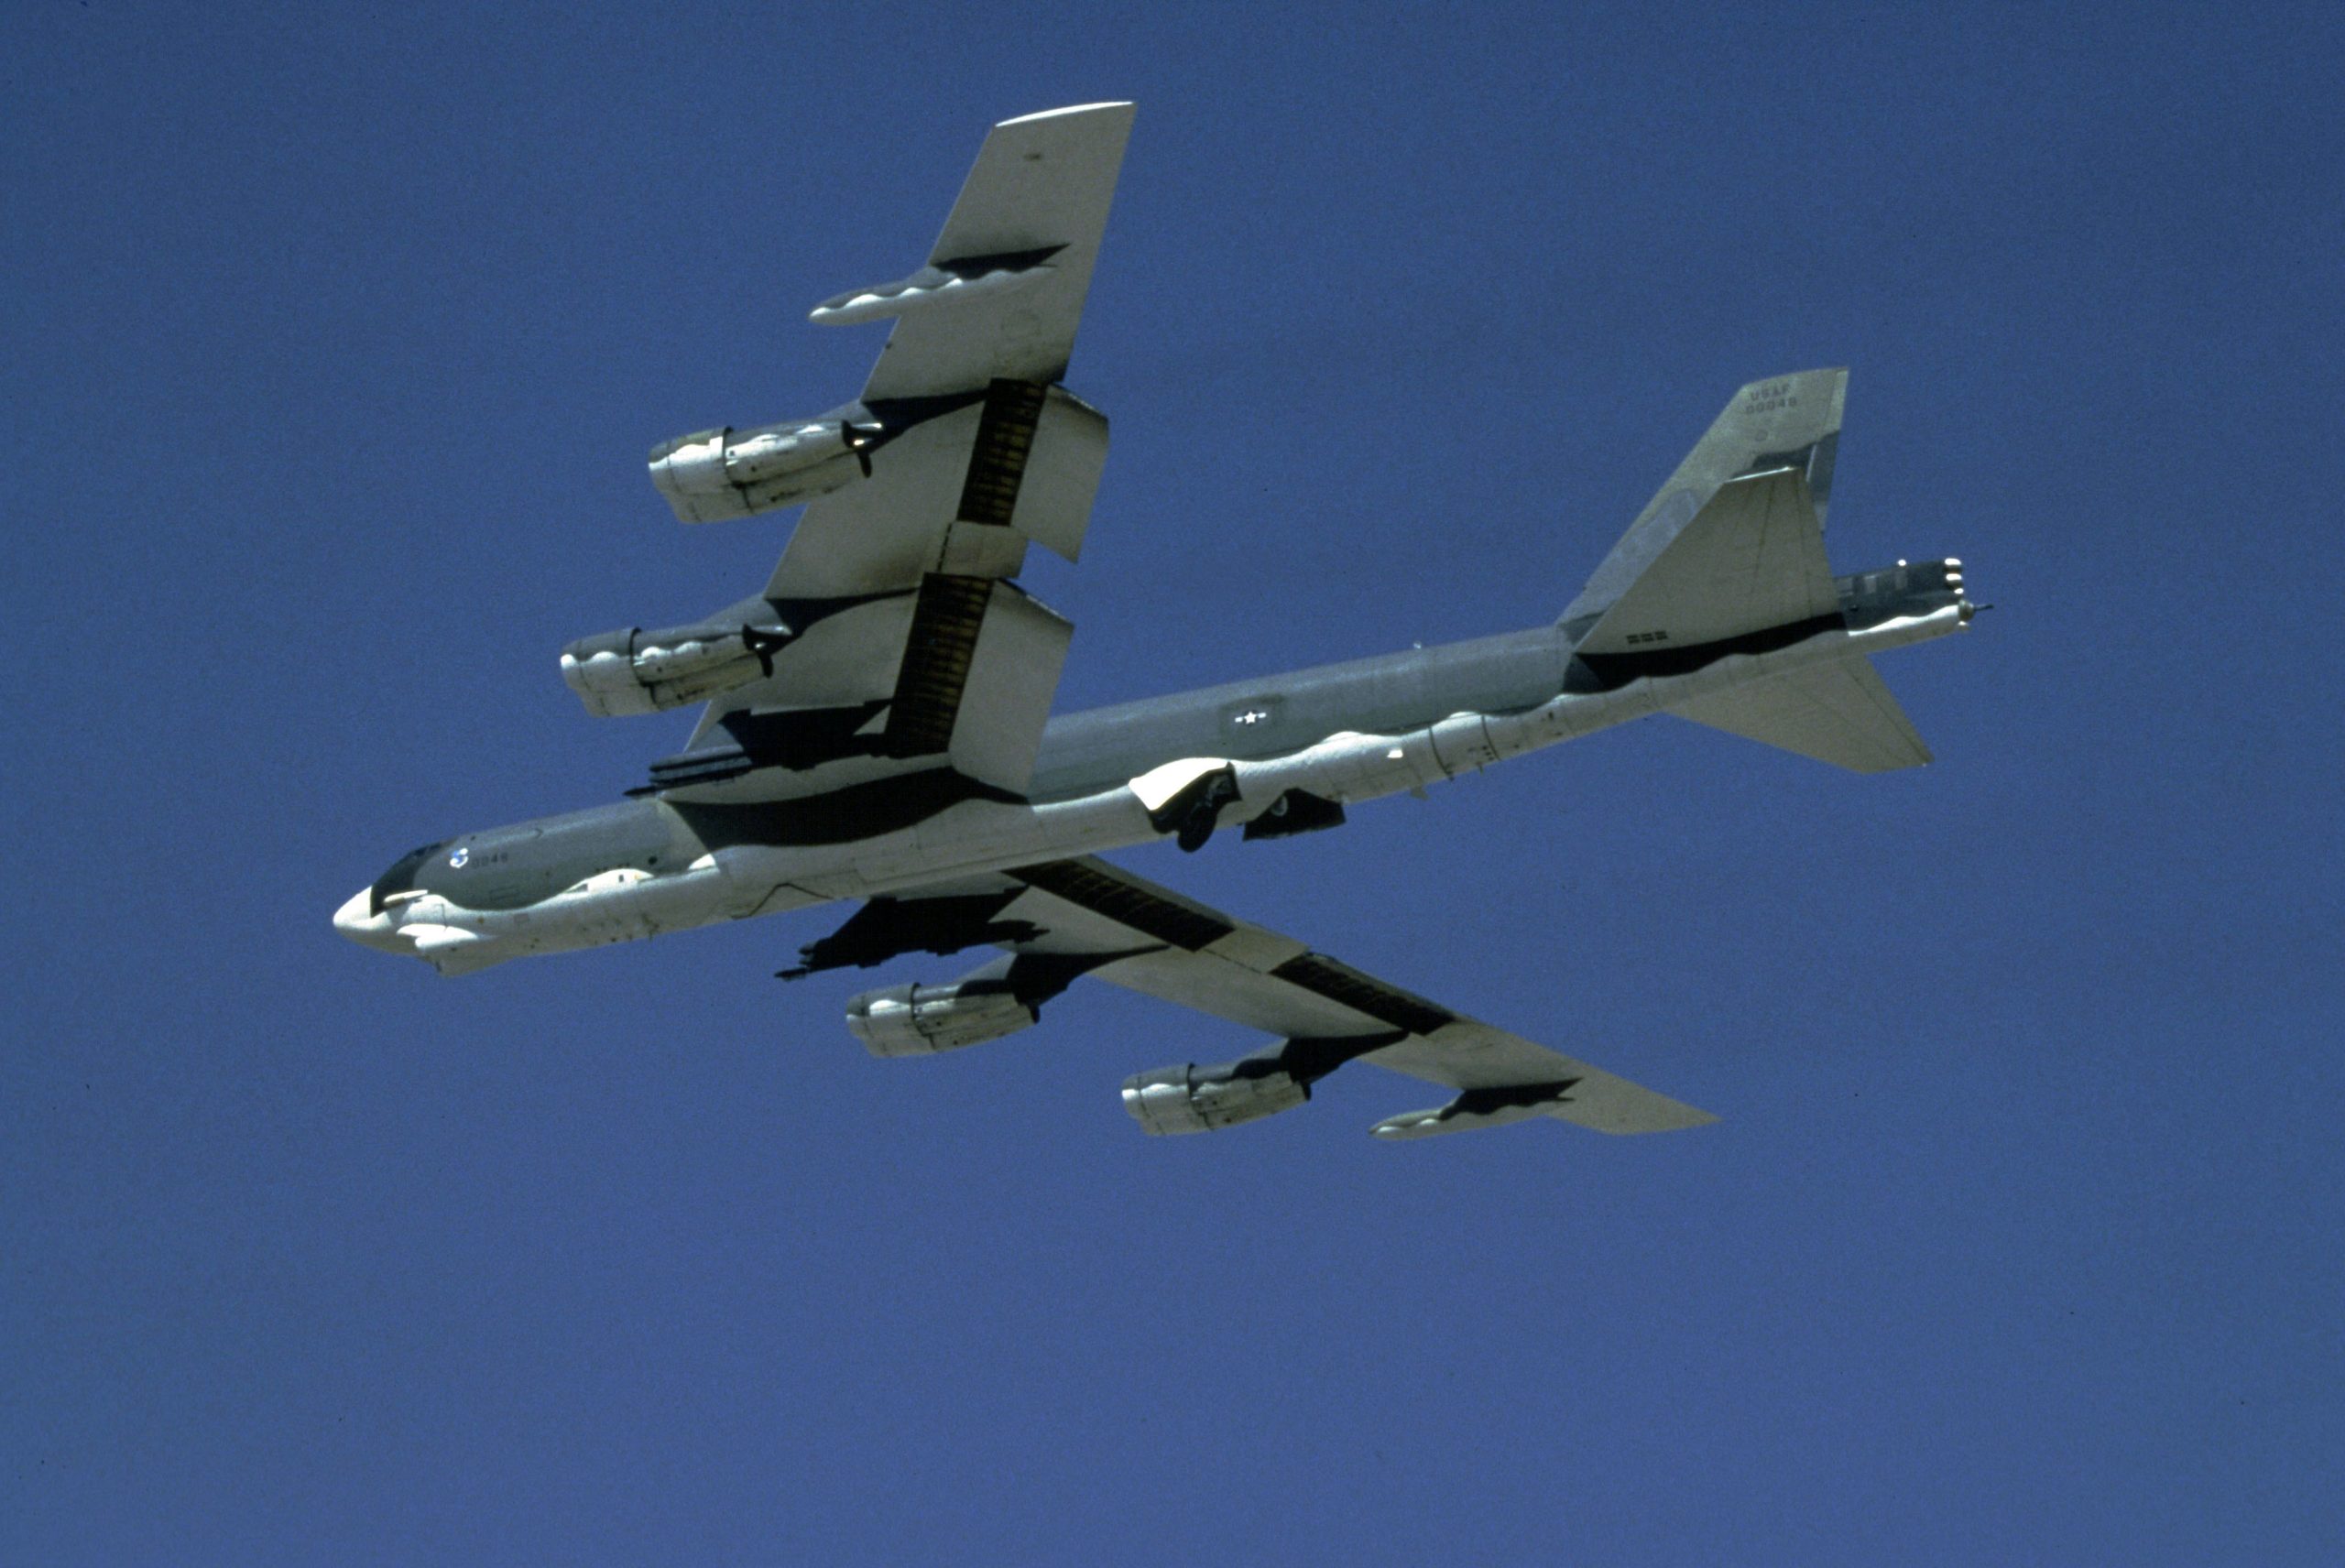 Εικονικό πλήγμα στην Αγία Πετρούπολη από αμερικανικό στρατηγικό βομβαρδιστικό B-52H σε απάντηση στο μακελειό των ΝΑΤΟϊκών με Kinzhal